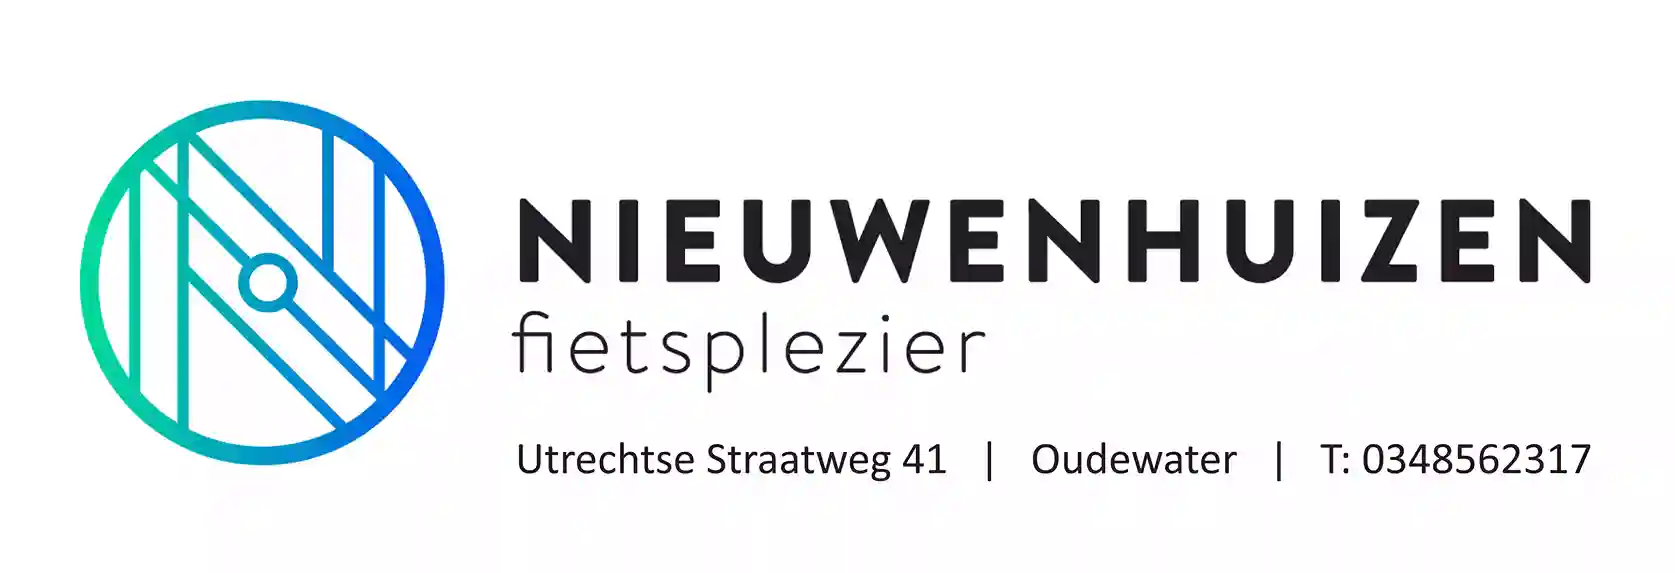 freecompress-Nieuwenhuizen-Fietsplezier150x50